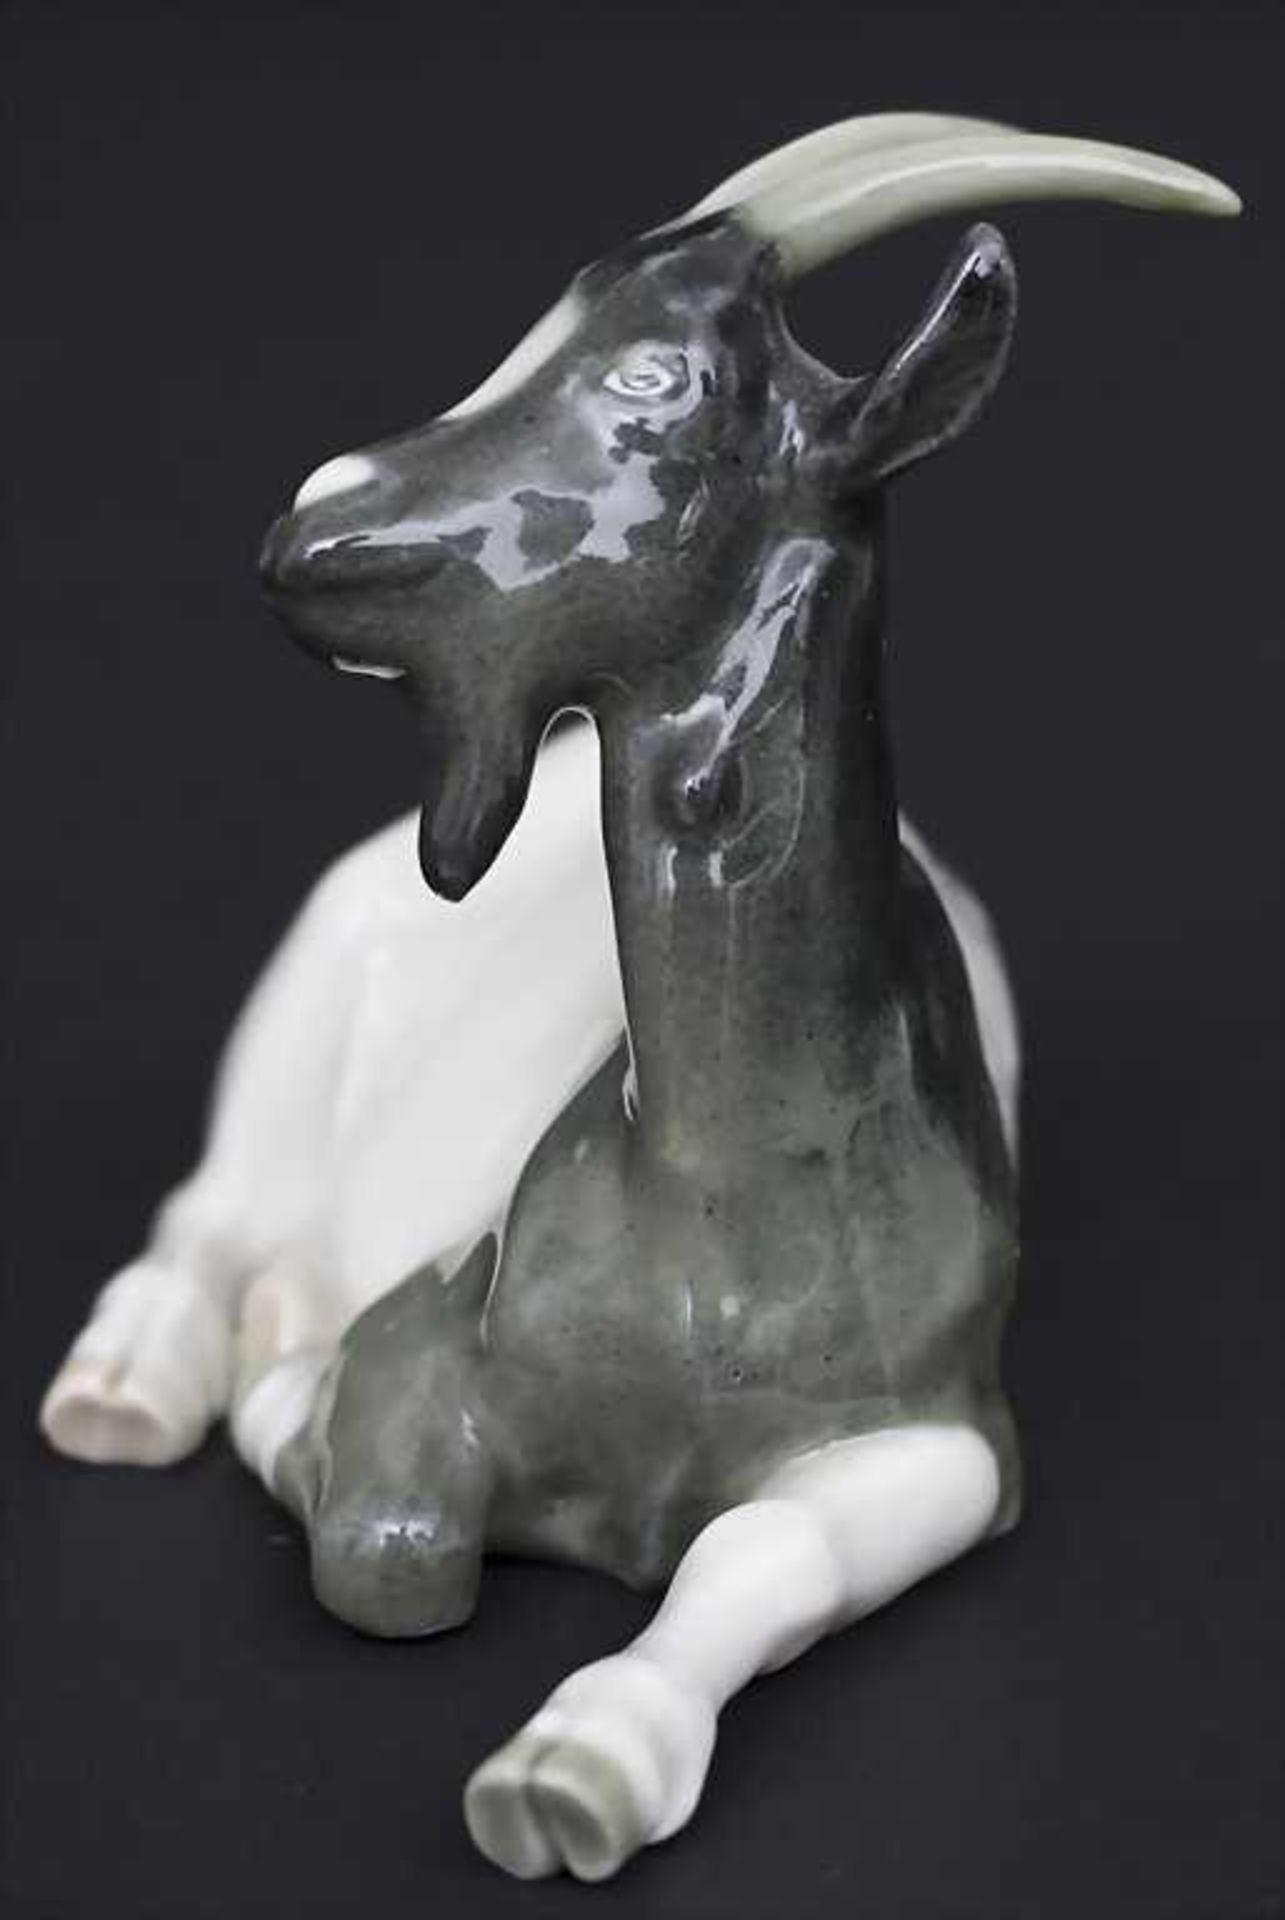 Jugendstil-Tierfigur 'liegender Ziegenbock' / An Art Nouveau animal figure of a reclining goat, - Image 4 of 6